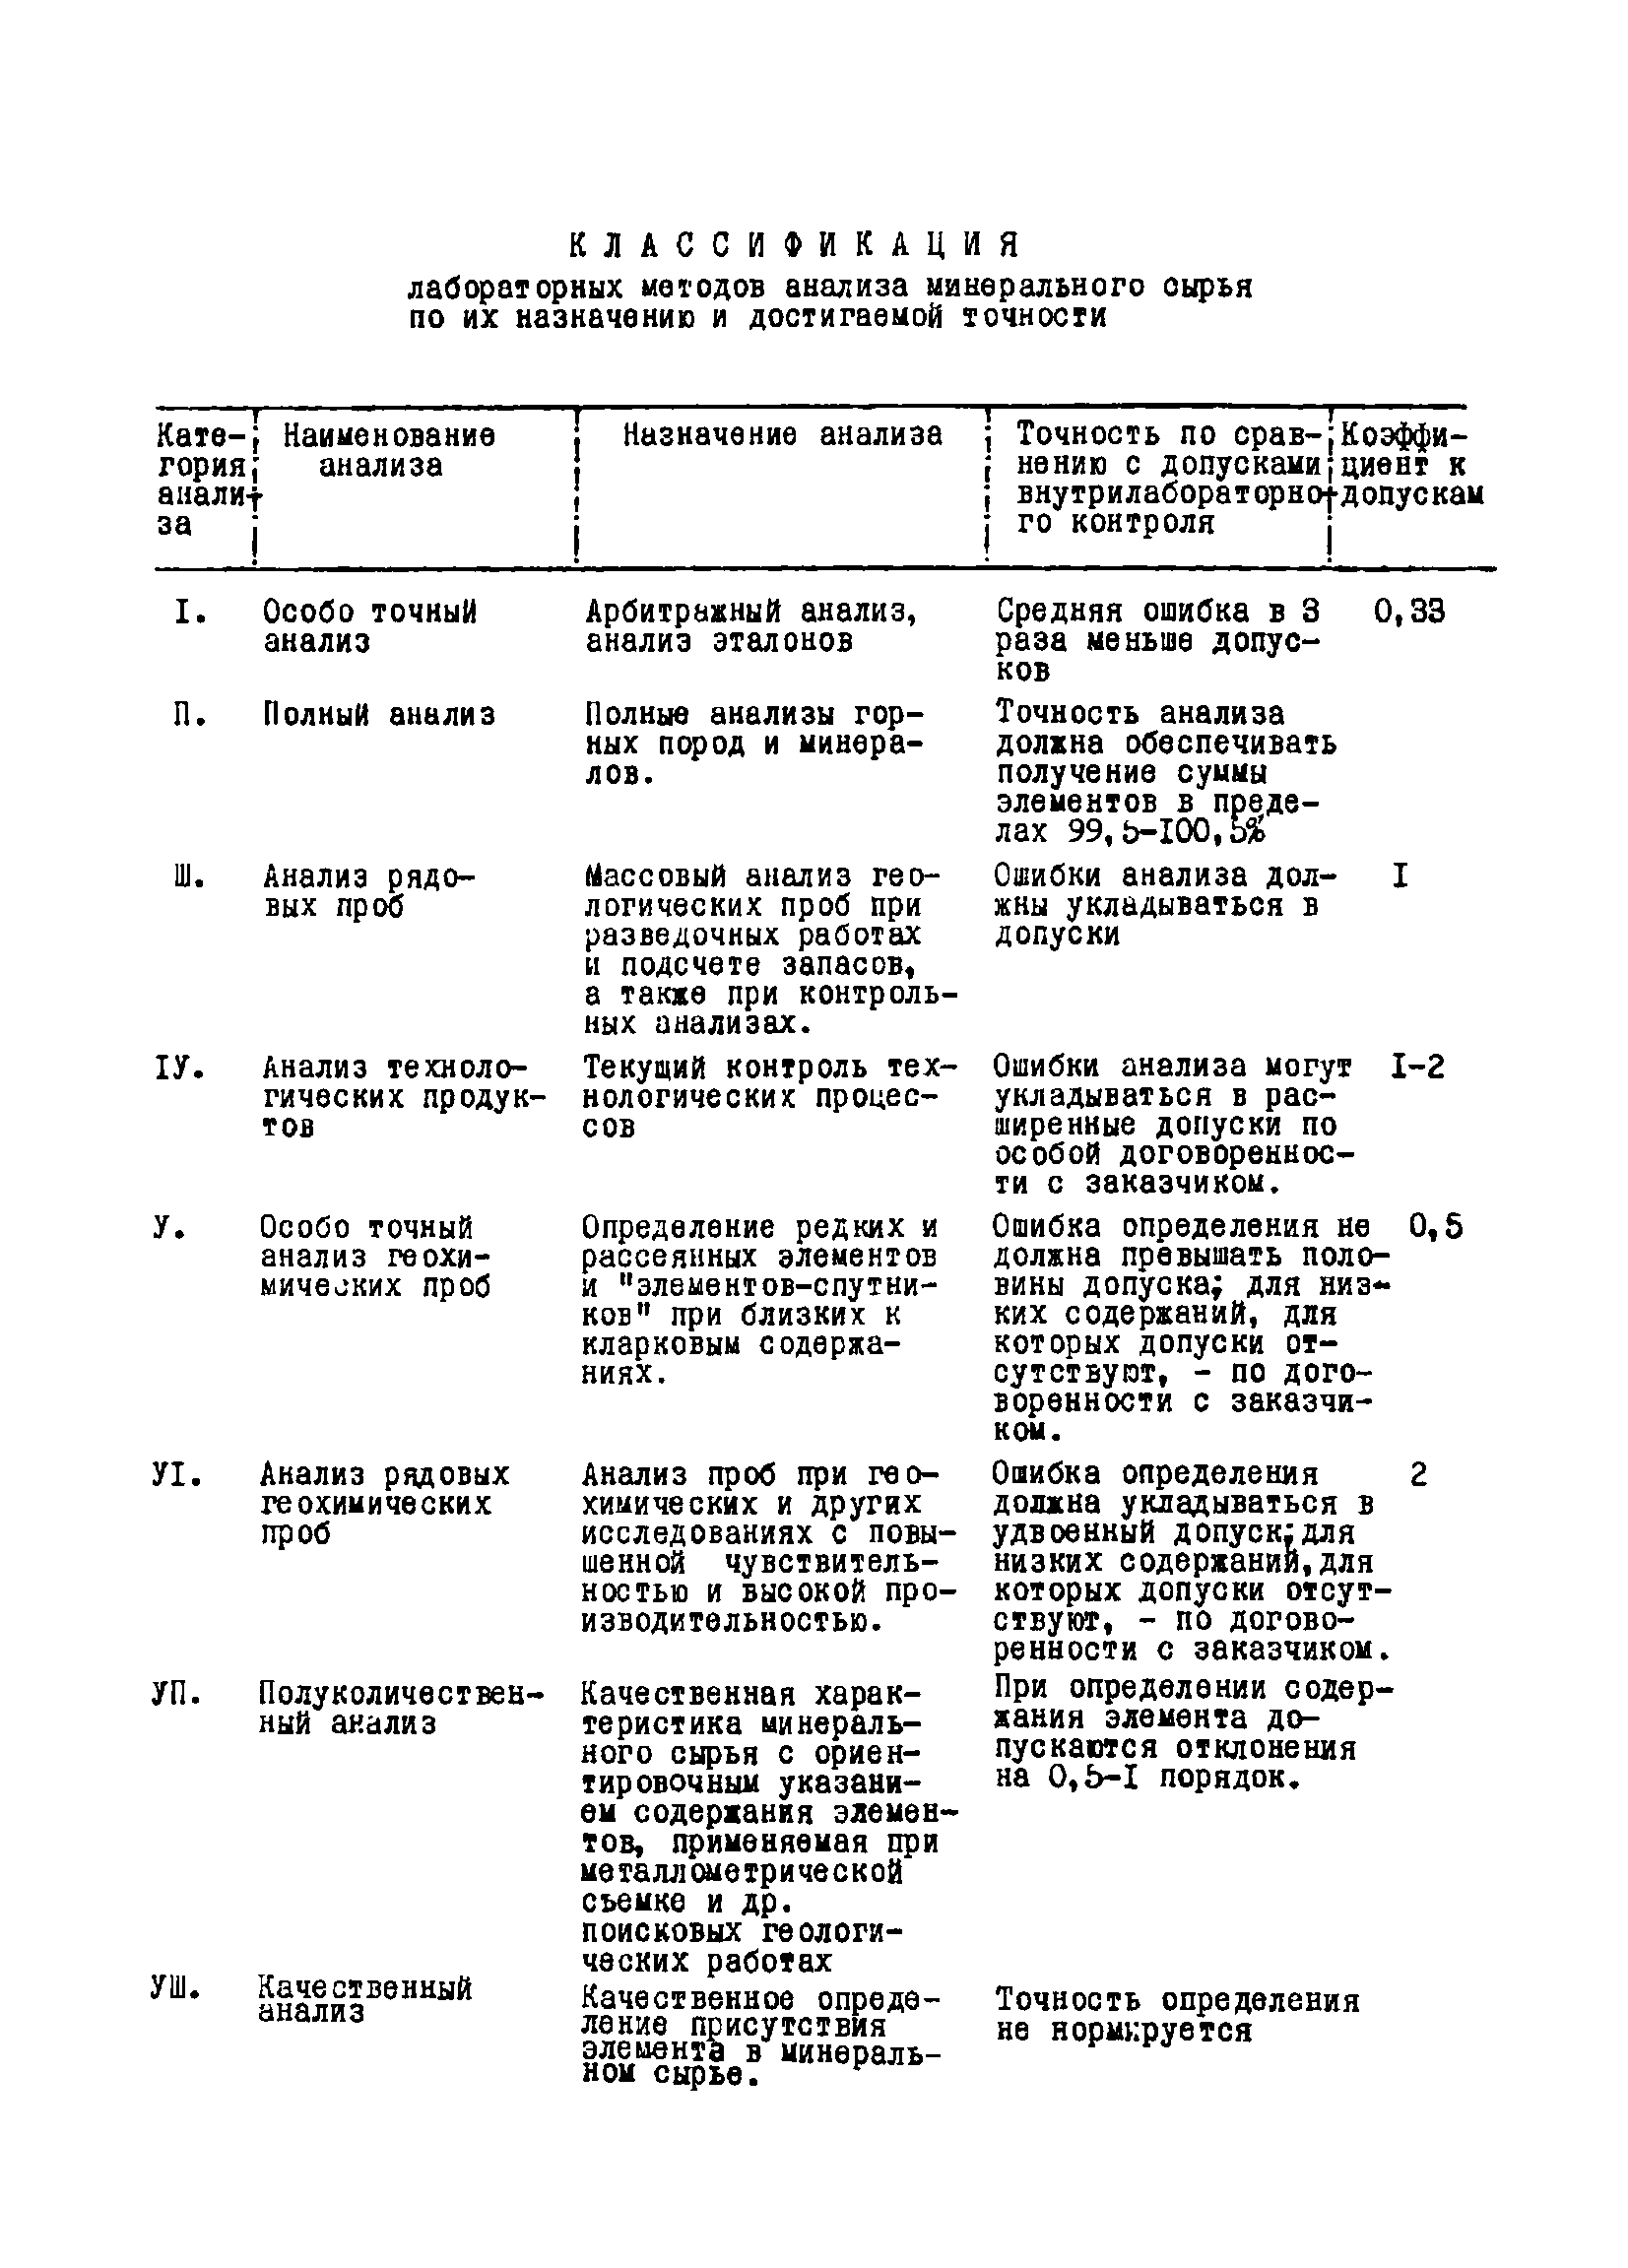 Инструкция НСАМ 95-ЯФ